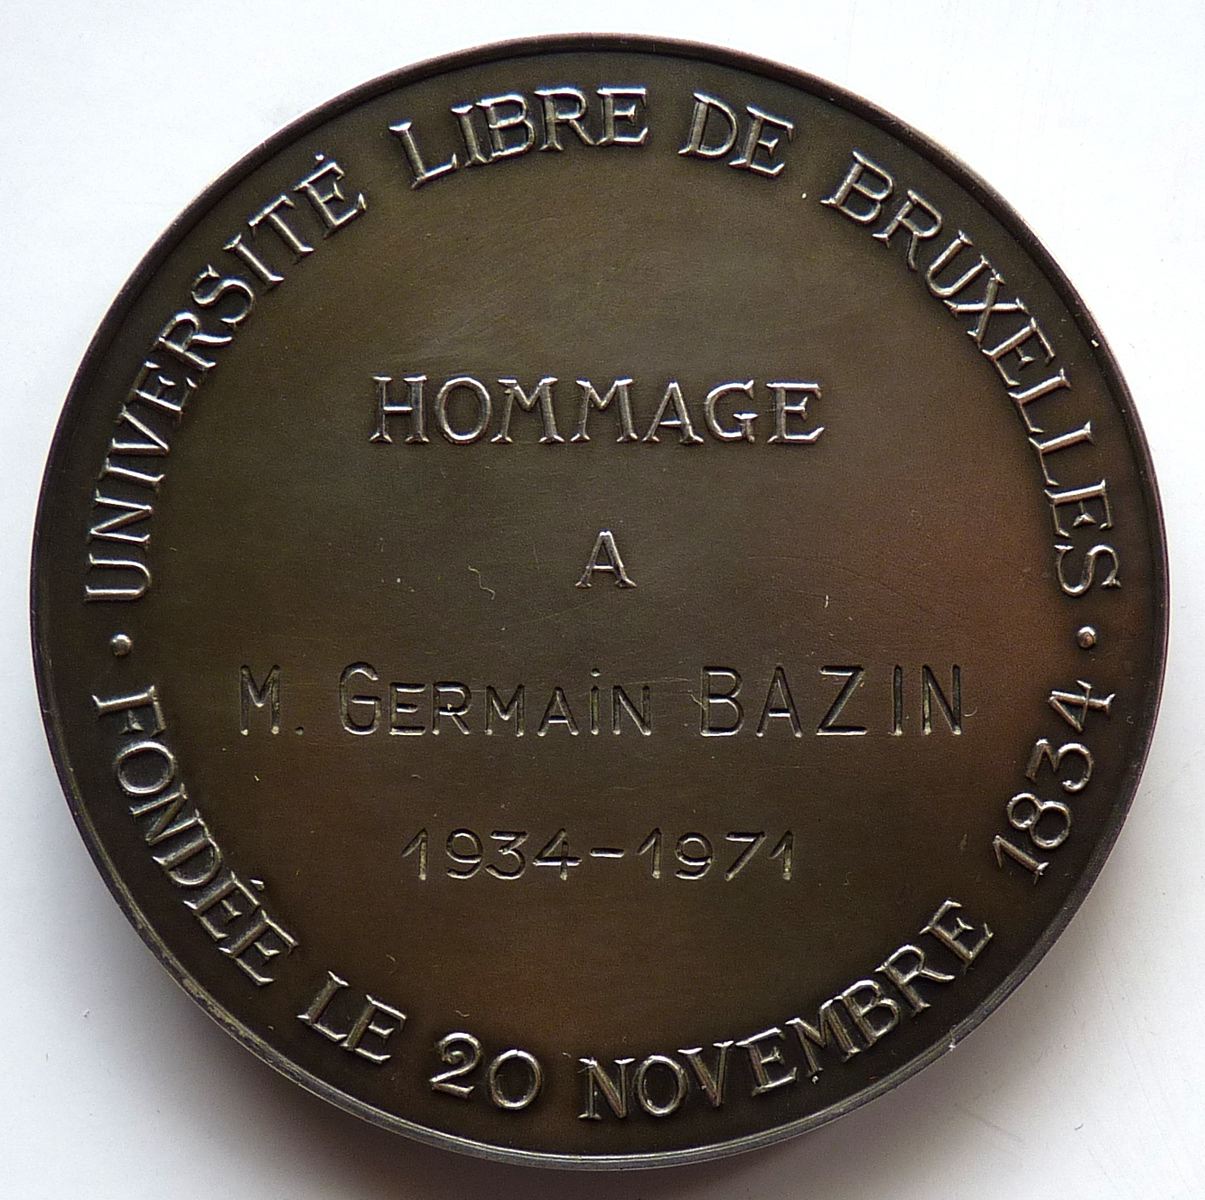 Université libre de Bruxelles - hommage à Germain Bazin